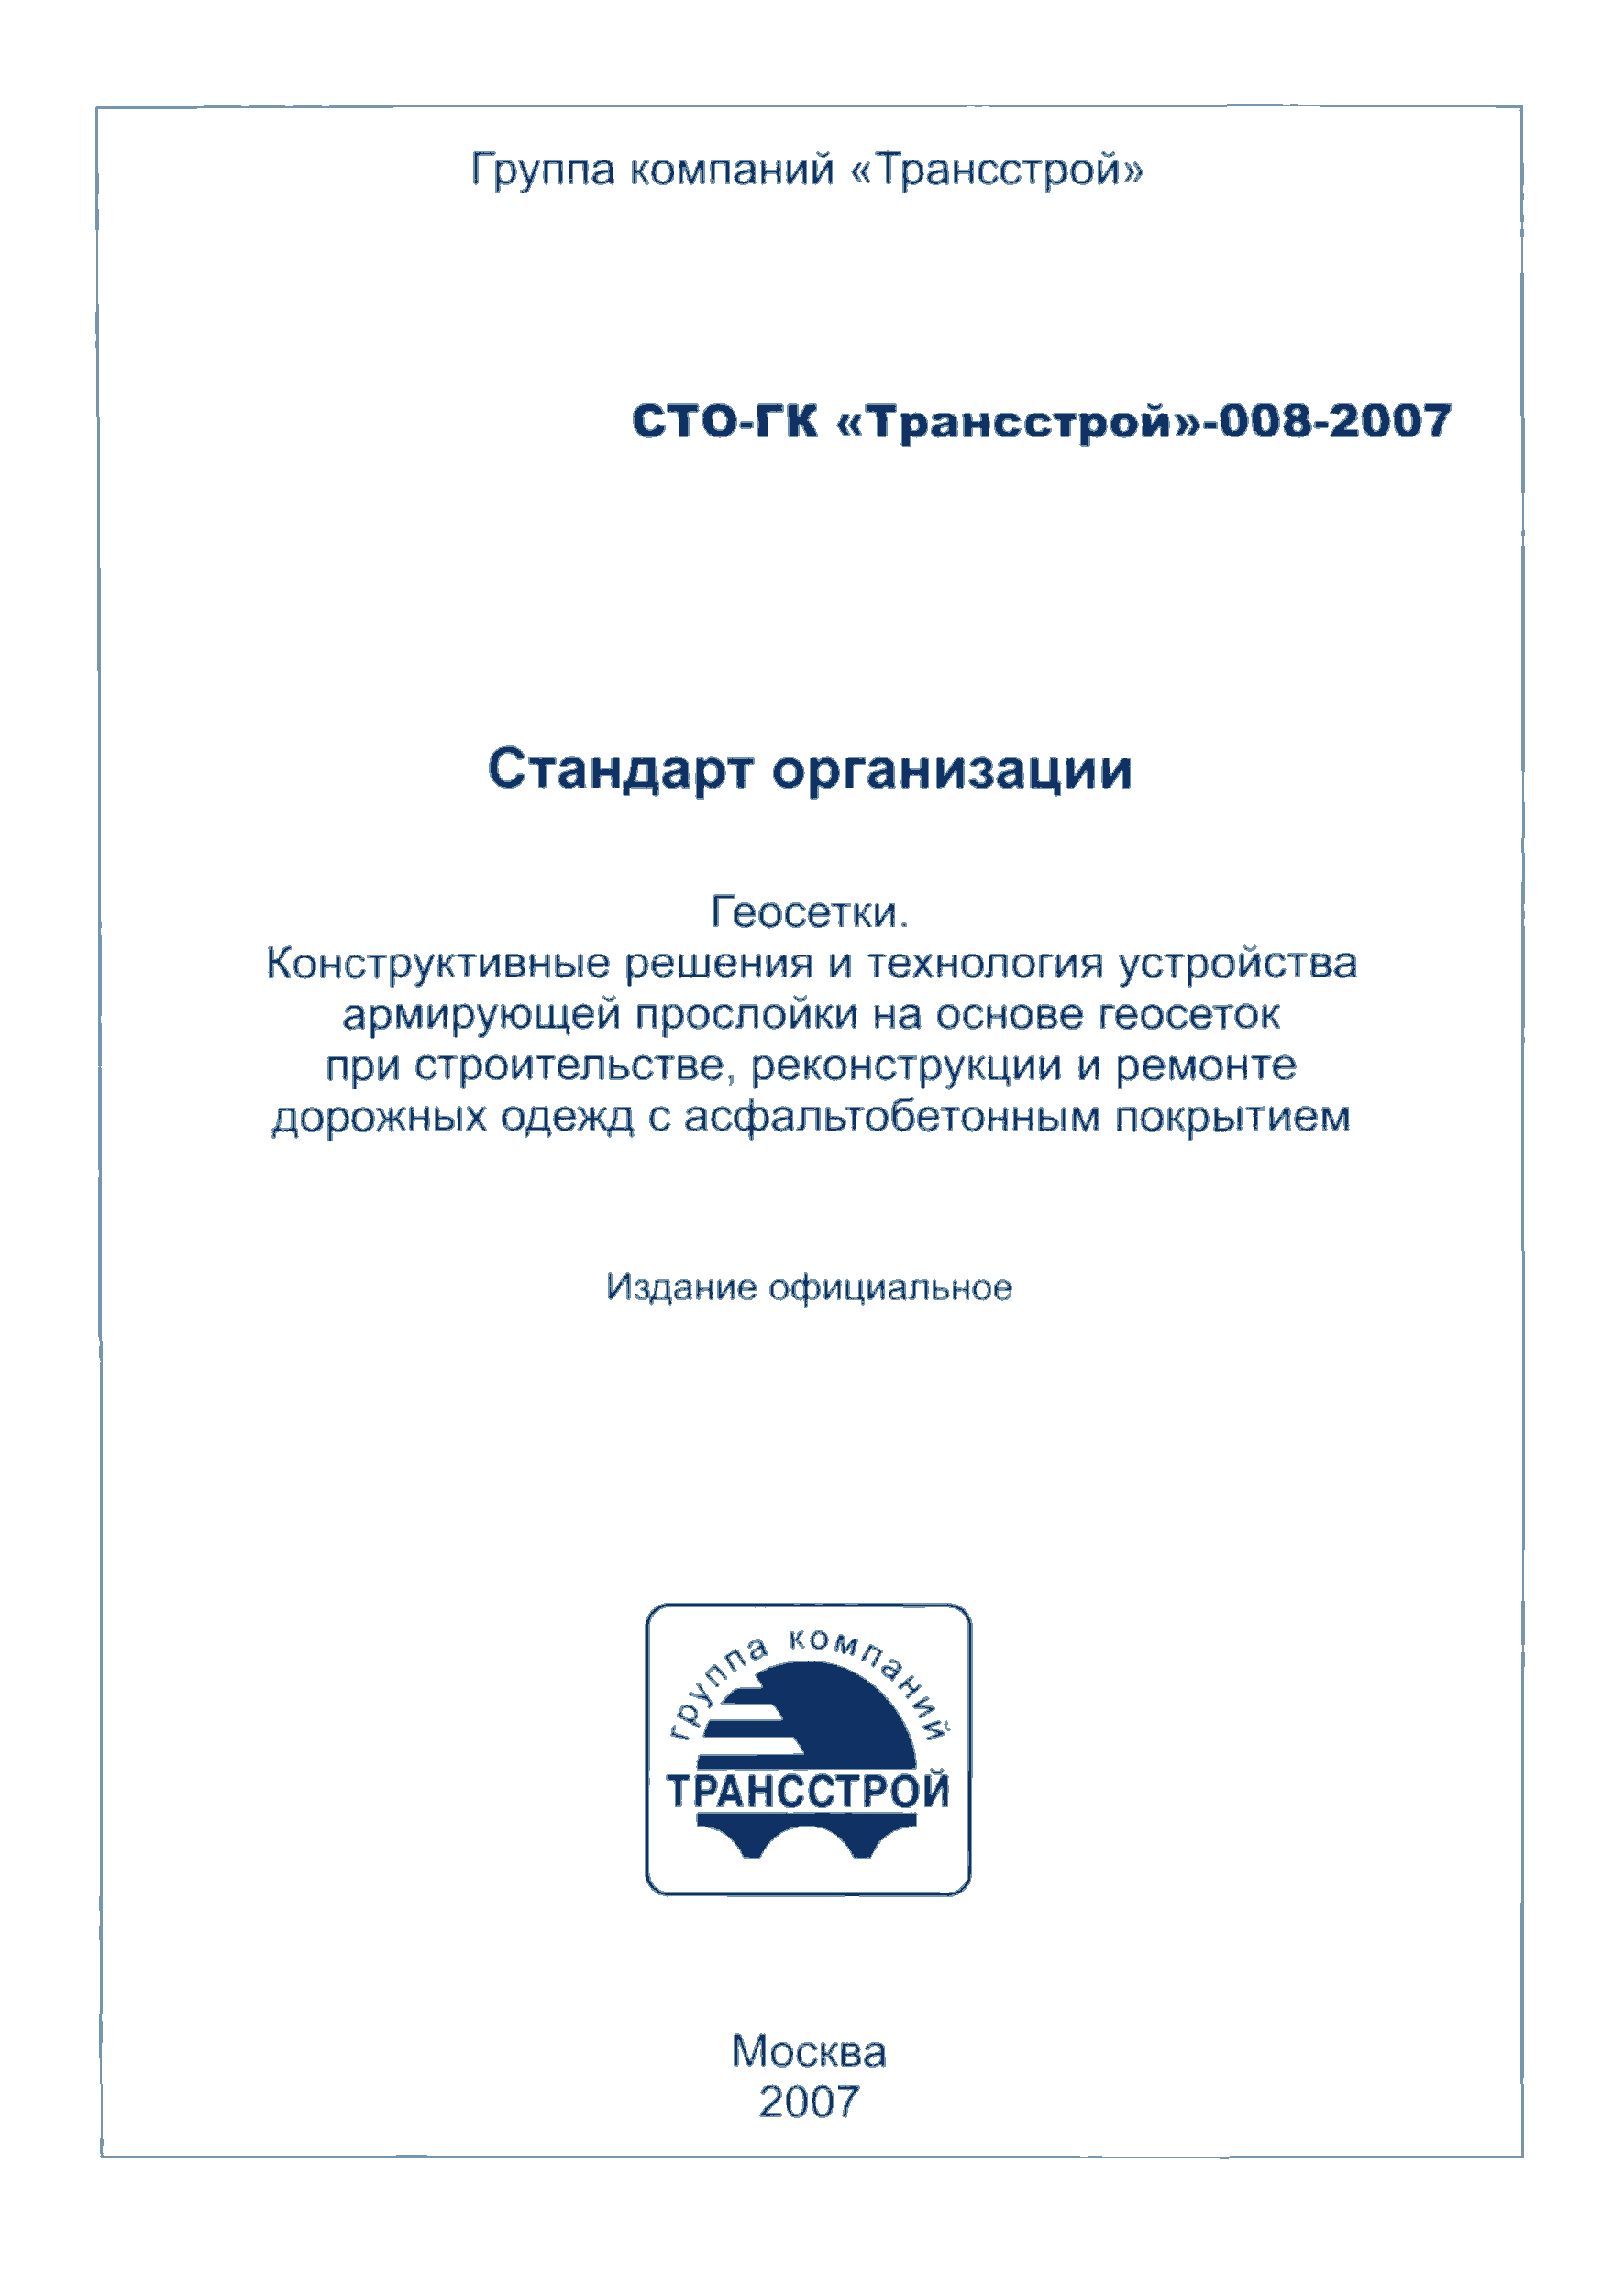 СТО-ГК "Трансстрой" 008-2007